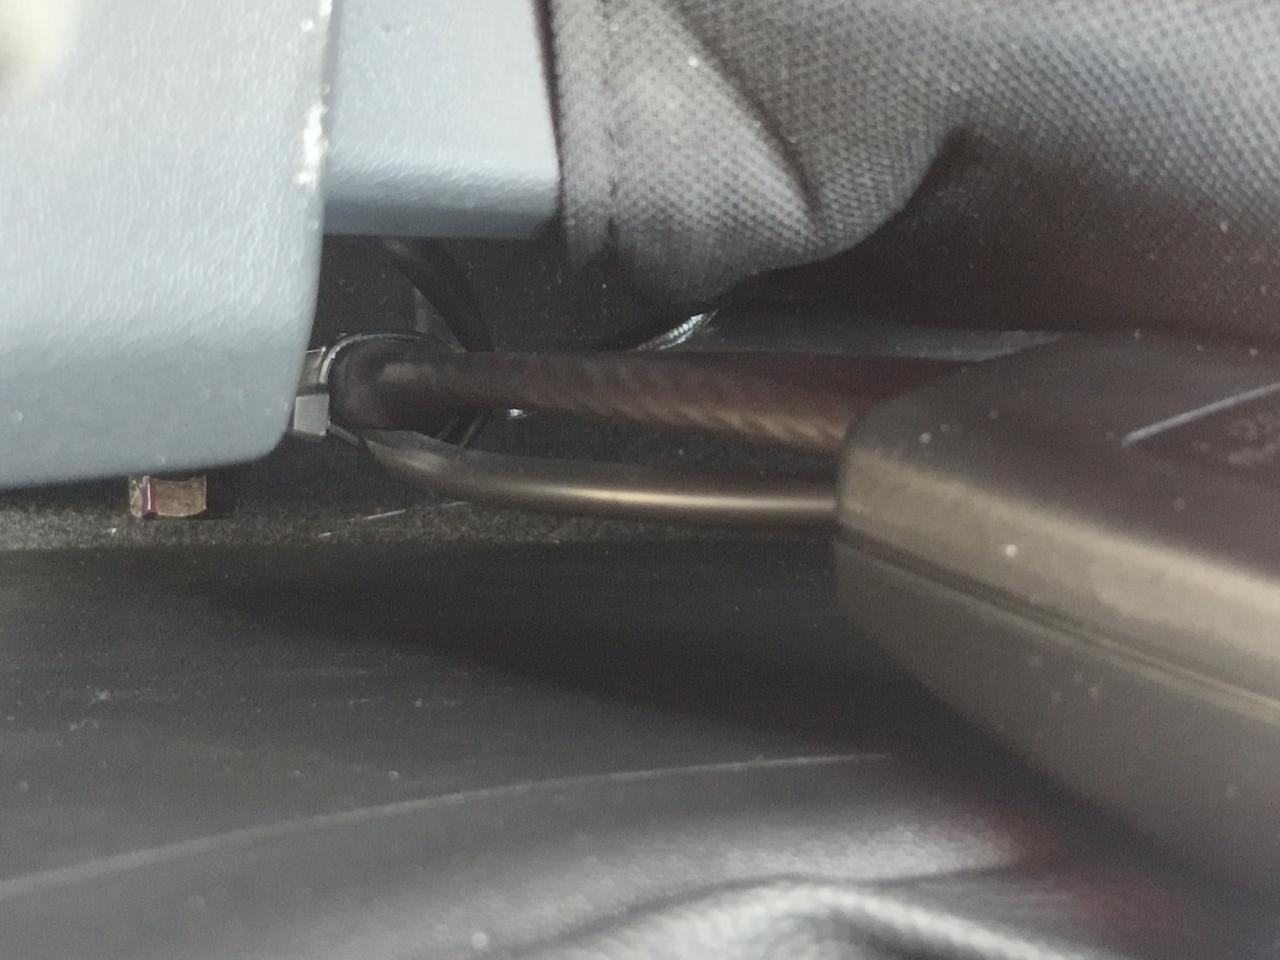 长安欧尚X5 第一次见安全带卡扣是用钢丝绳链接的，见过的车记得都是铁片的吧     的欧尚x5也是这样的吗  